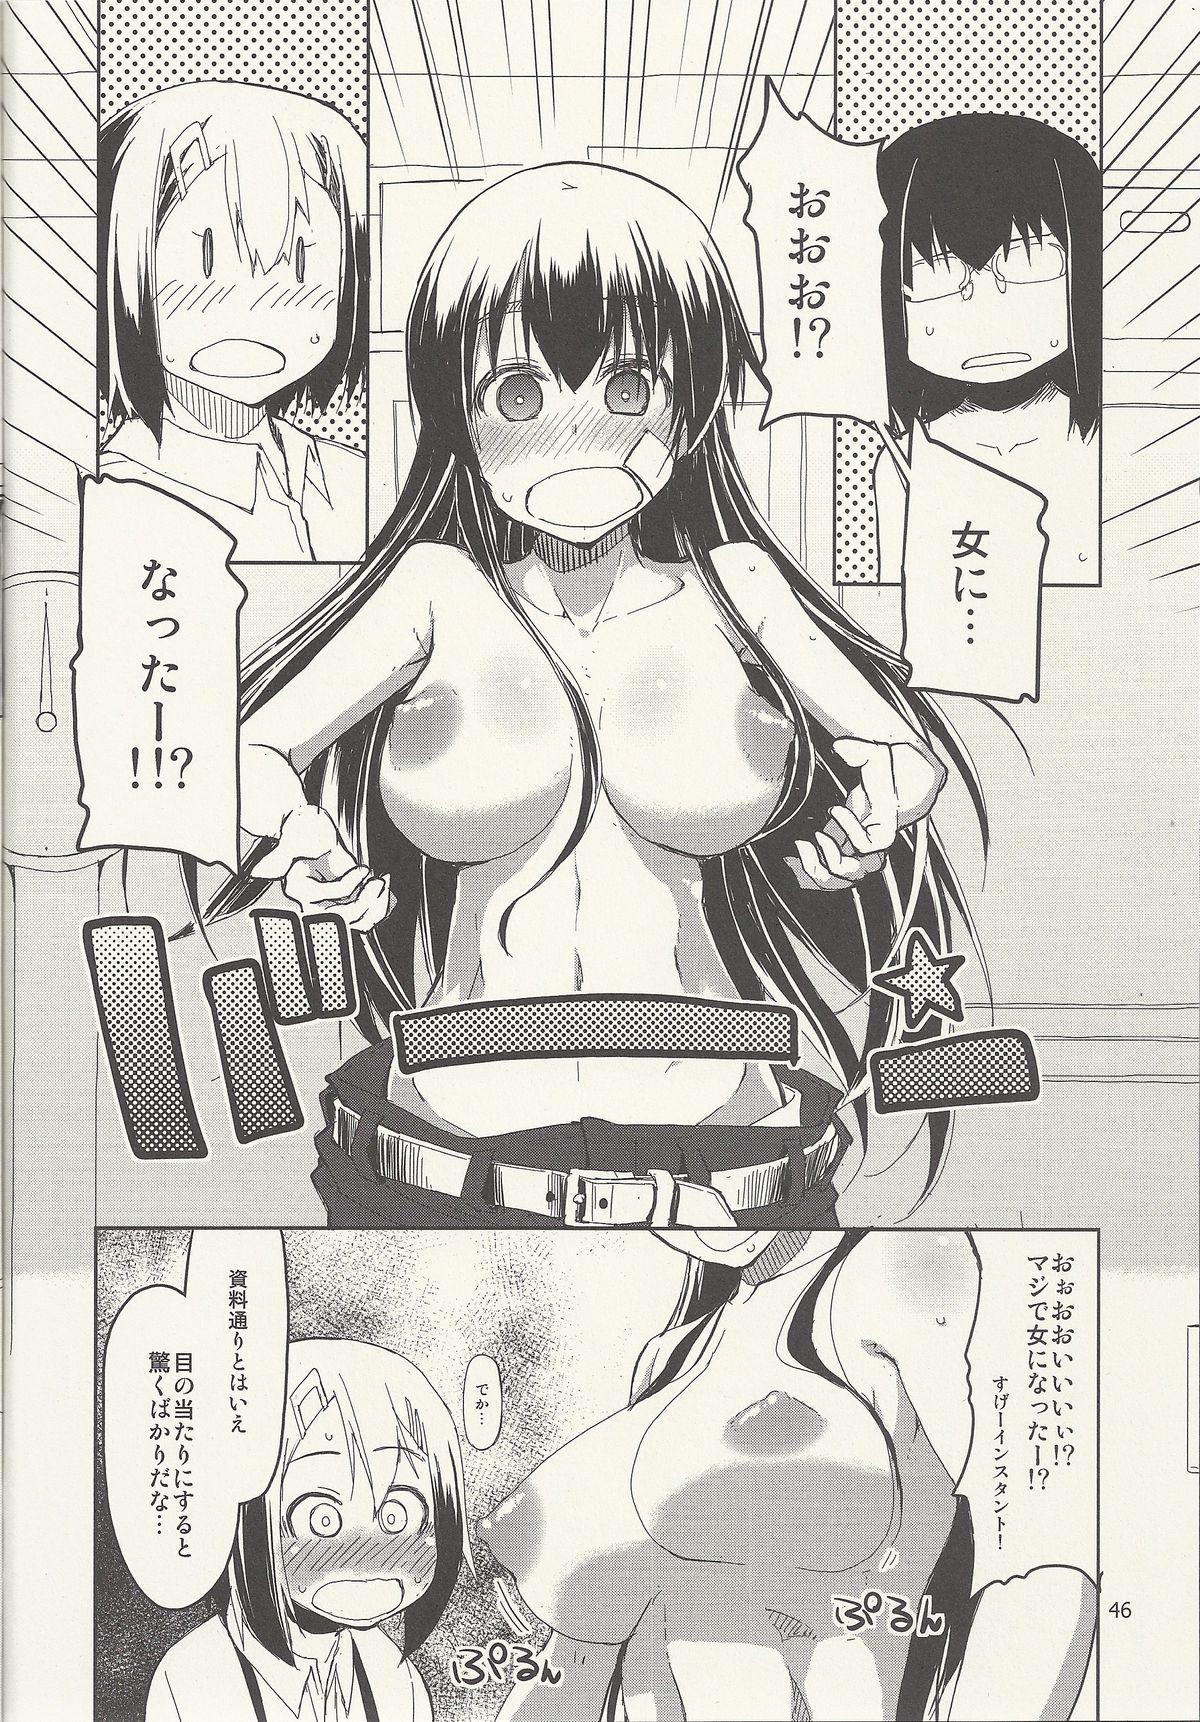 Natsuzuka-san no Himitsu. Vol. 6 Kanketsu Hen 47